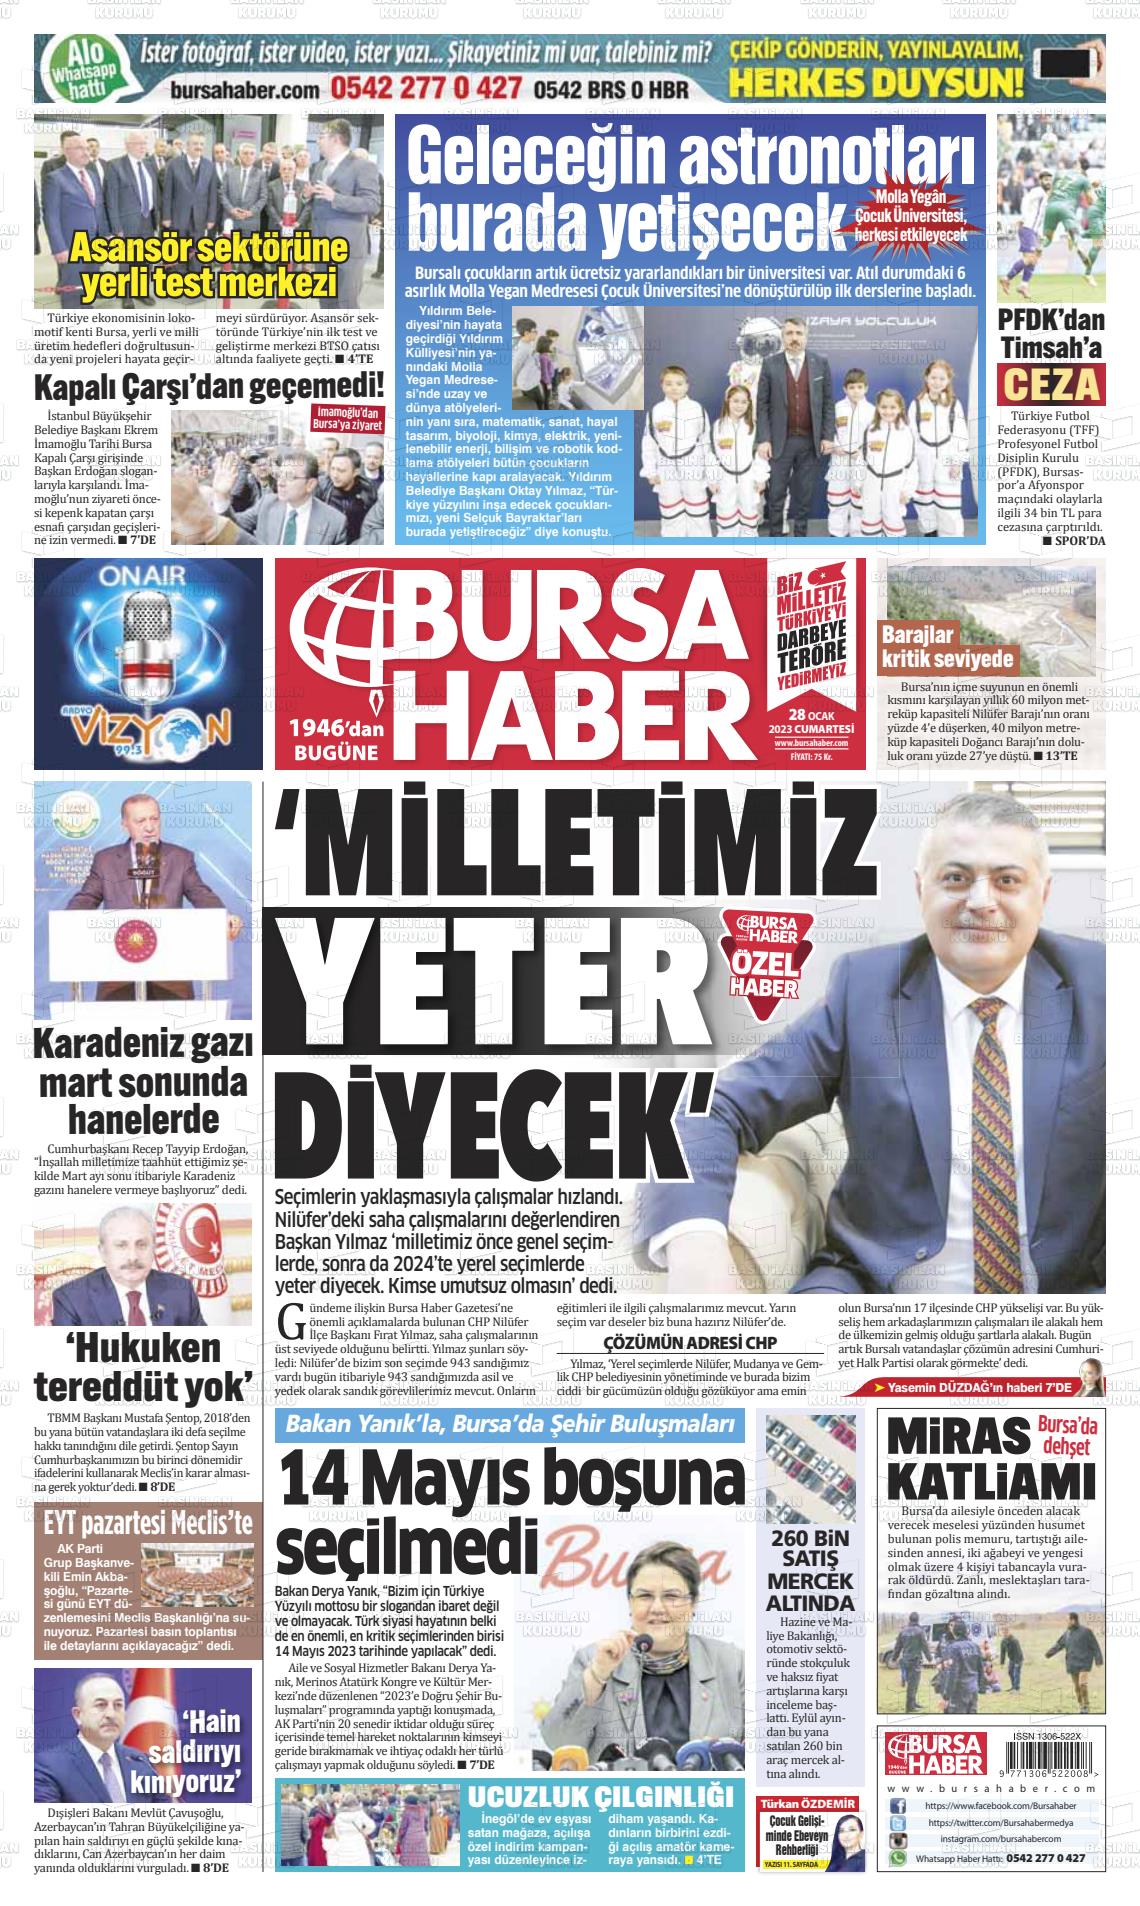 28 Ocak 2023 Bursa Haber Gazete Manşeti